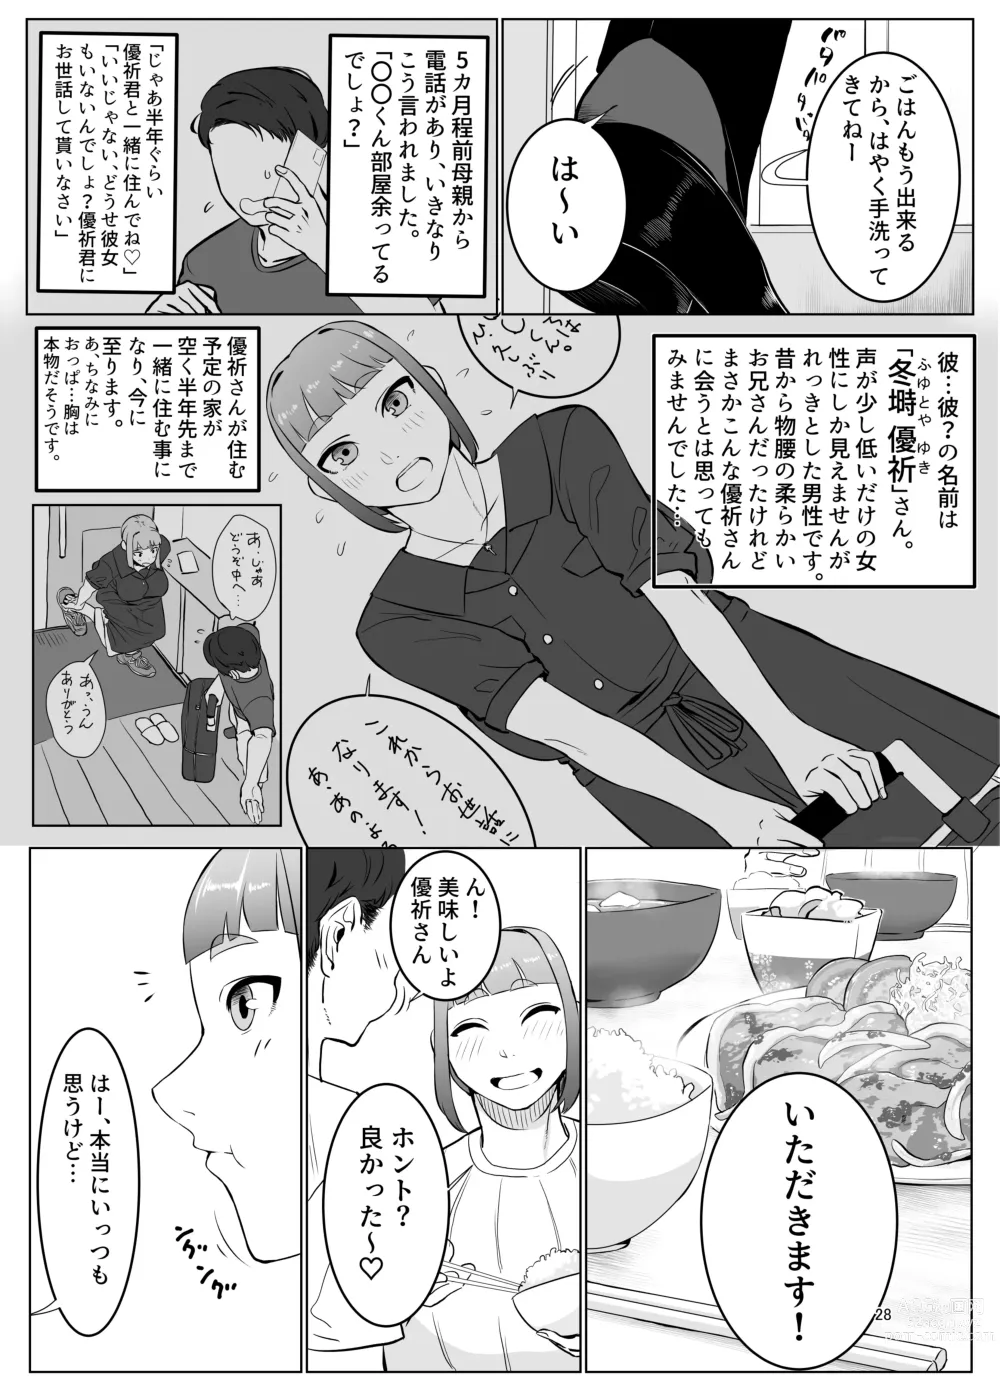 Page 28 of doujinshi Shemale & Mesu Danshi Goudoushi Cs HAVEN 3 Ball